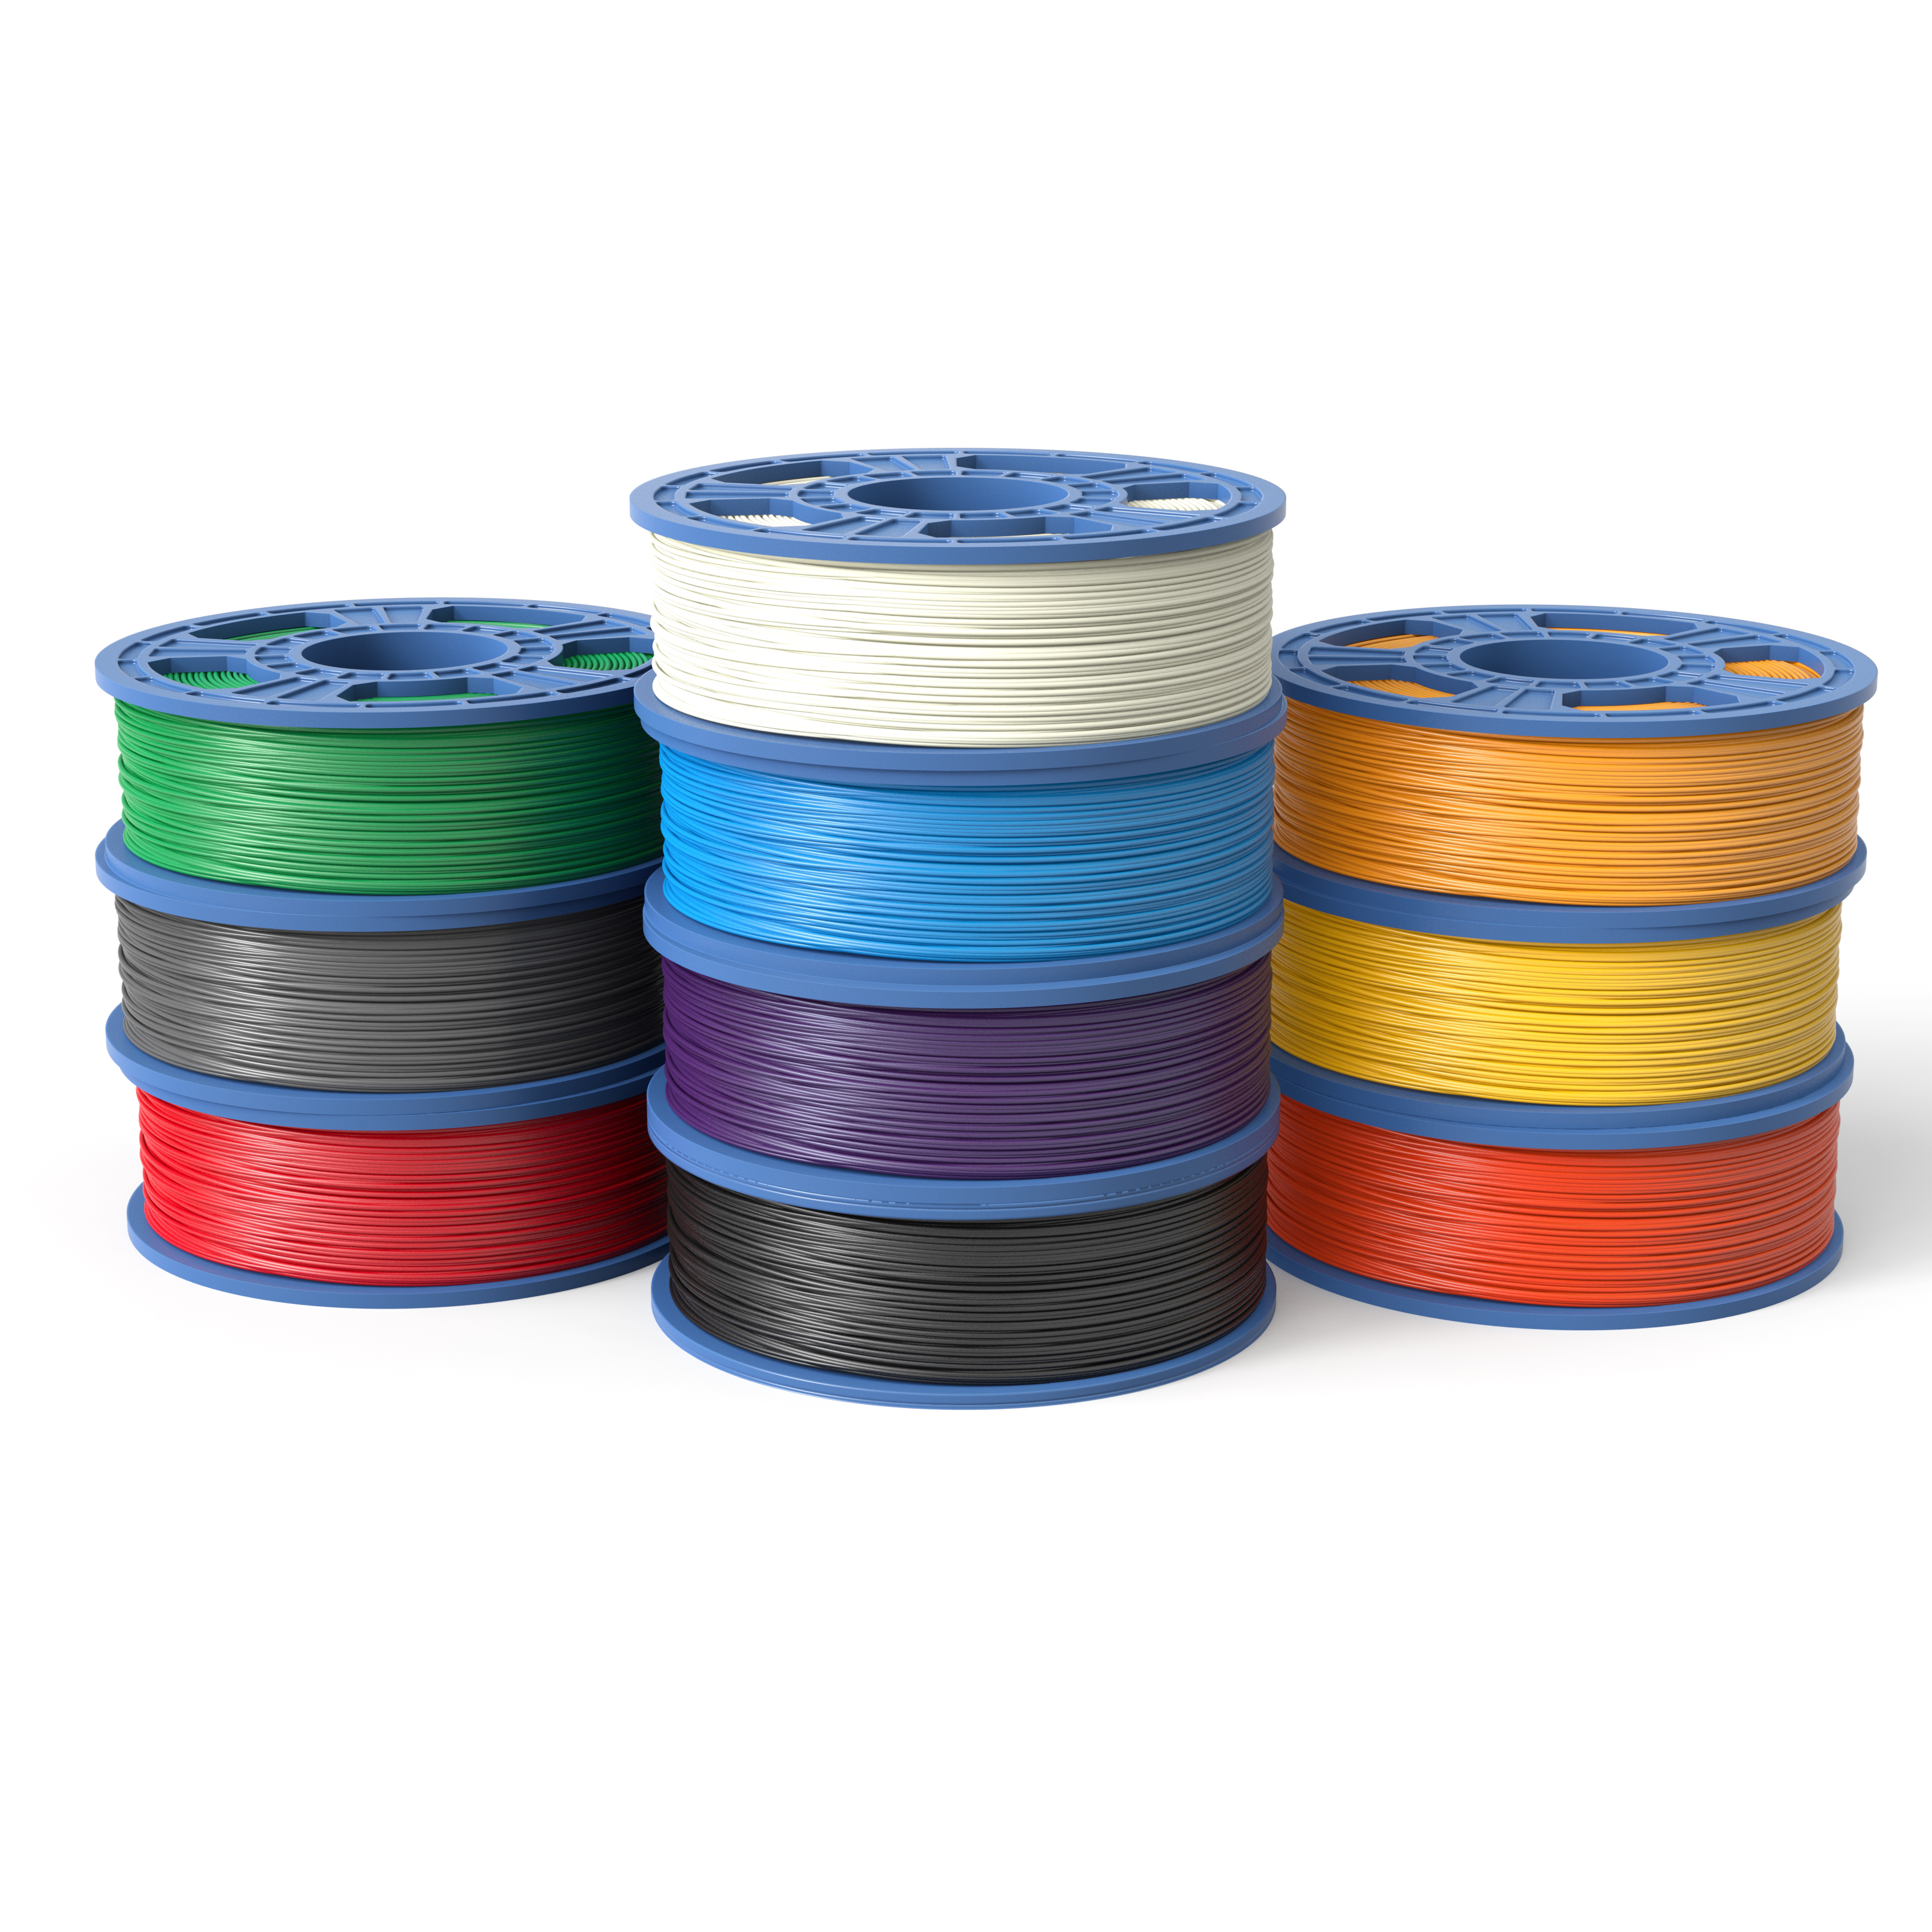 10 Pack Small PLA True Colors 1.75mm Filament